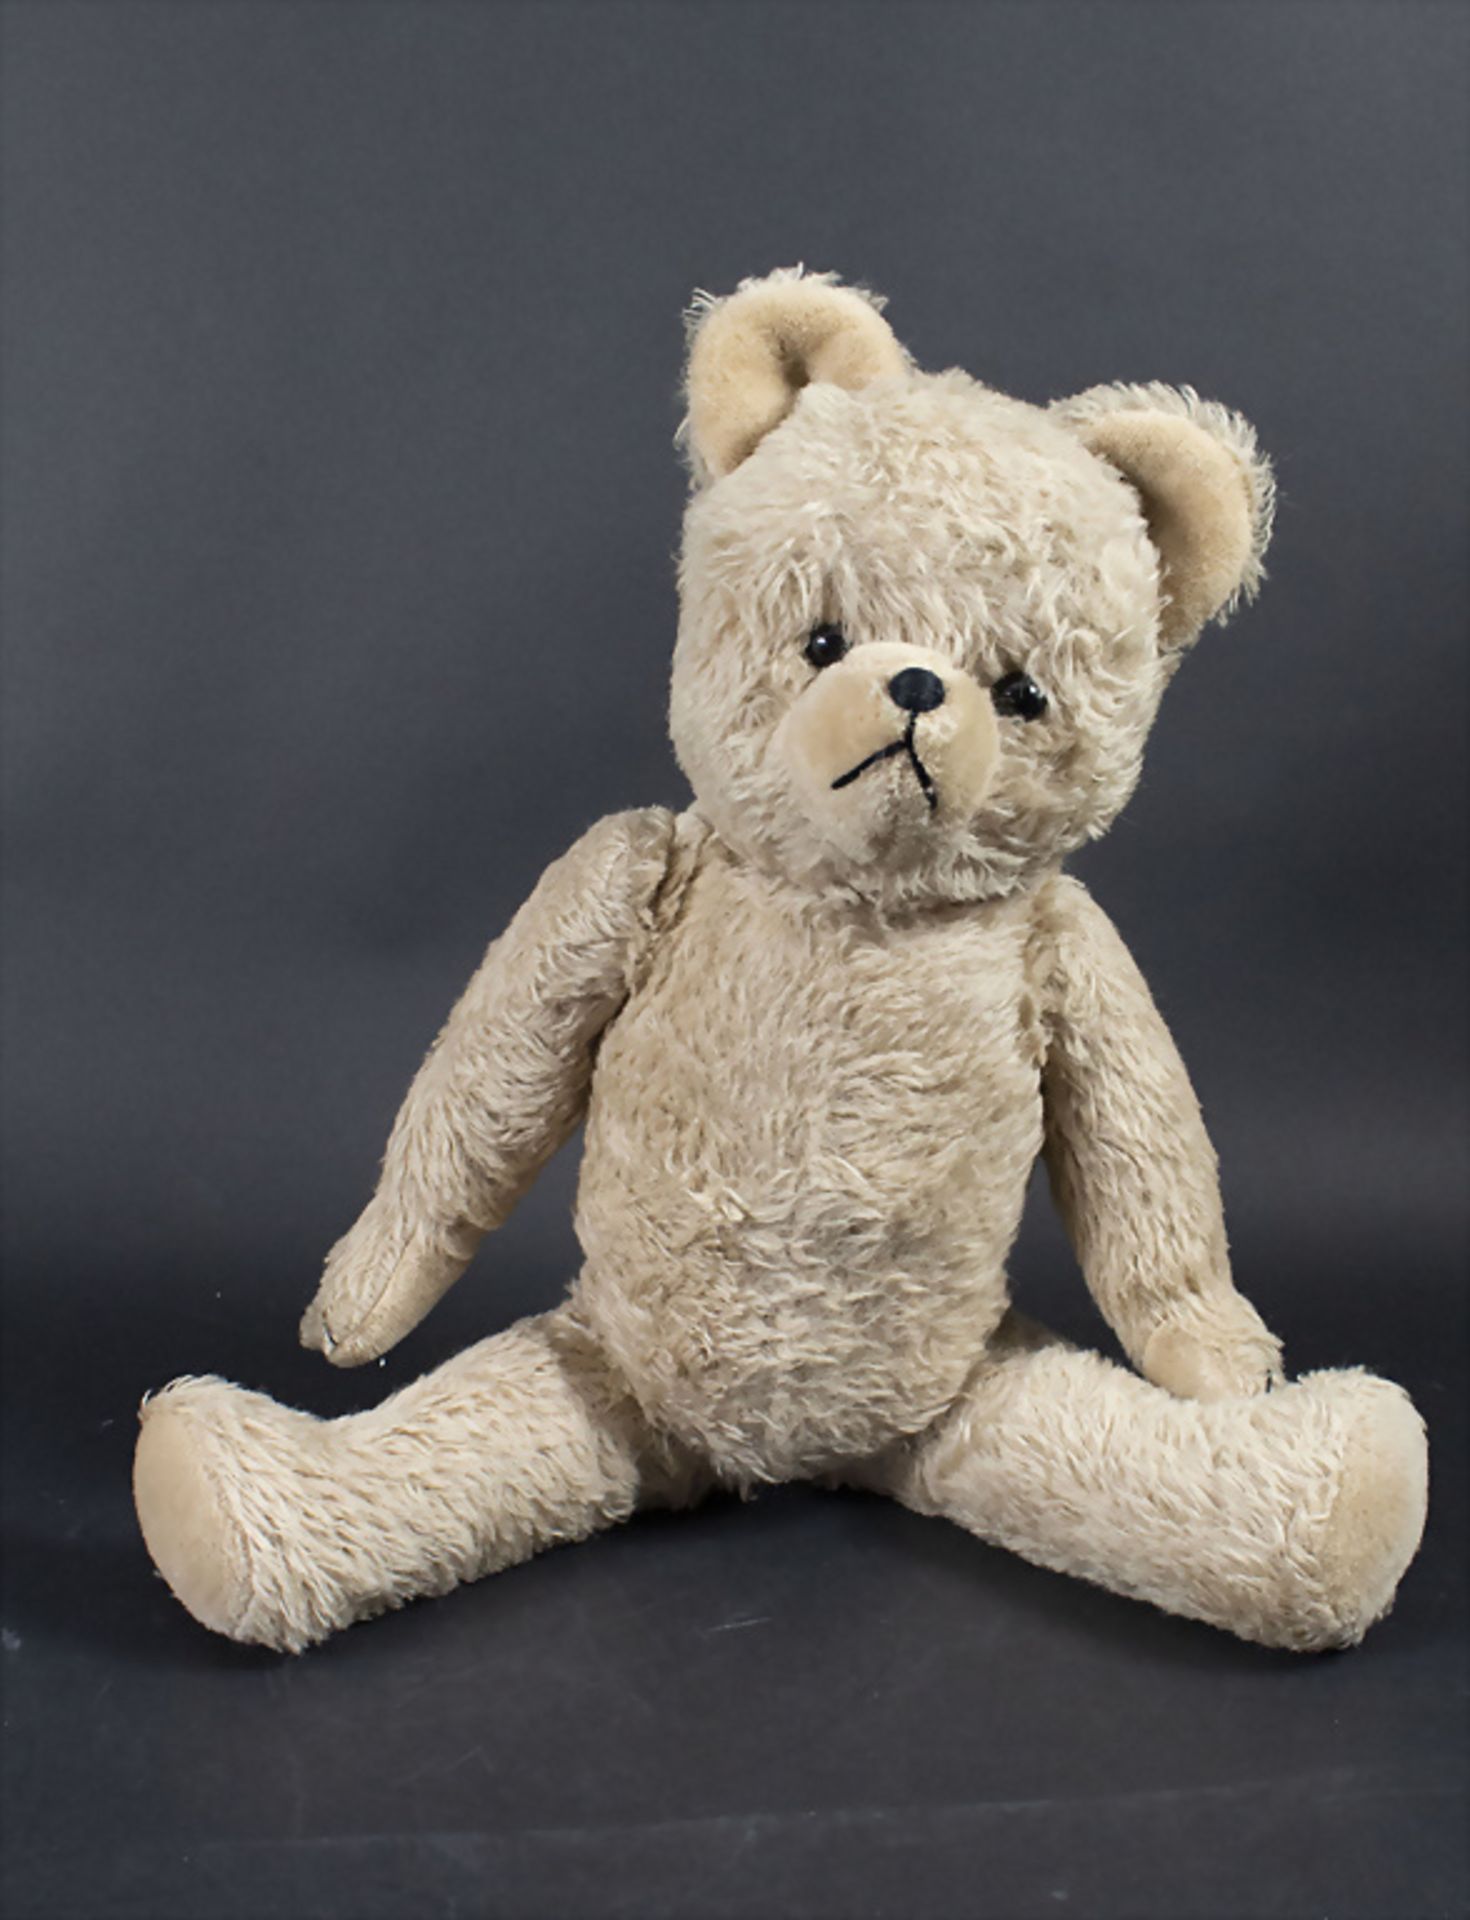 Teddybär / A teddy bear mascot, Hermann, 1970er Jahre